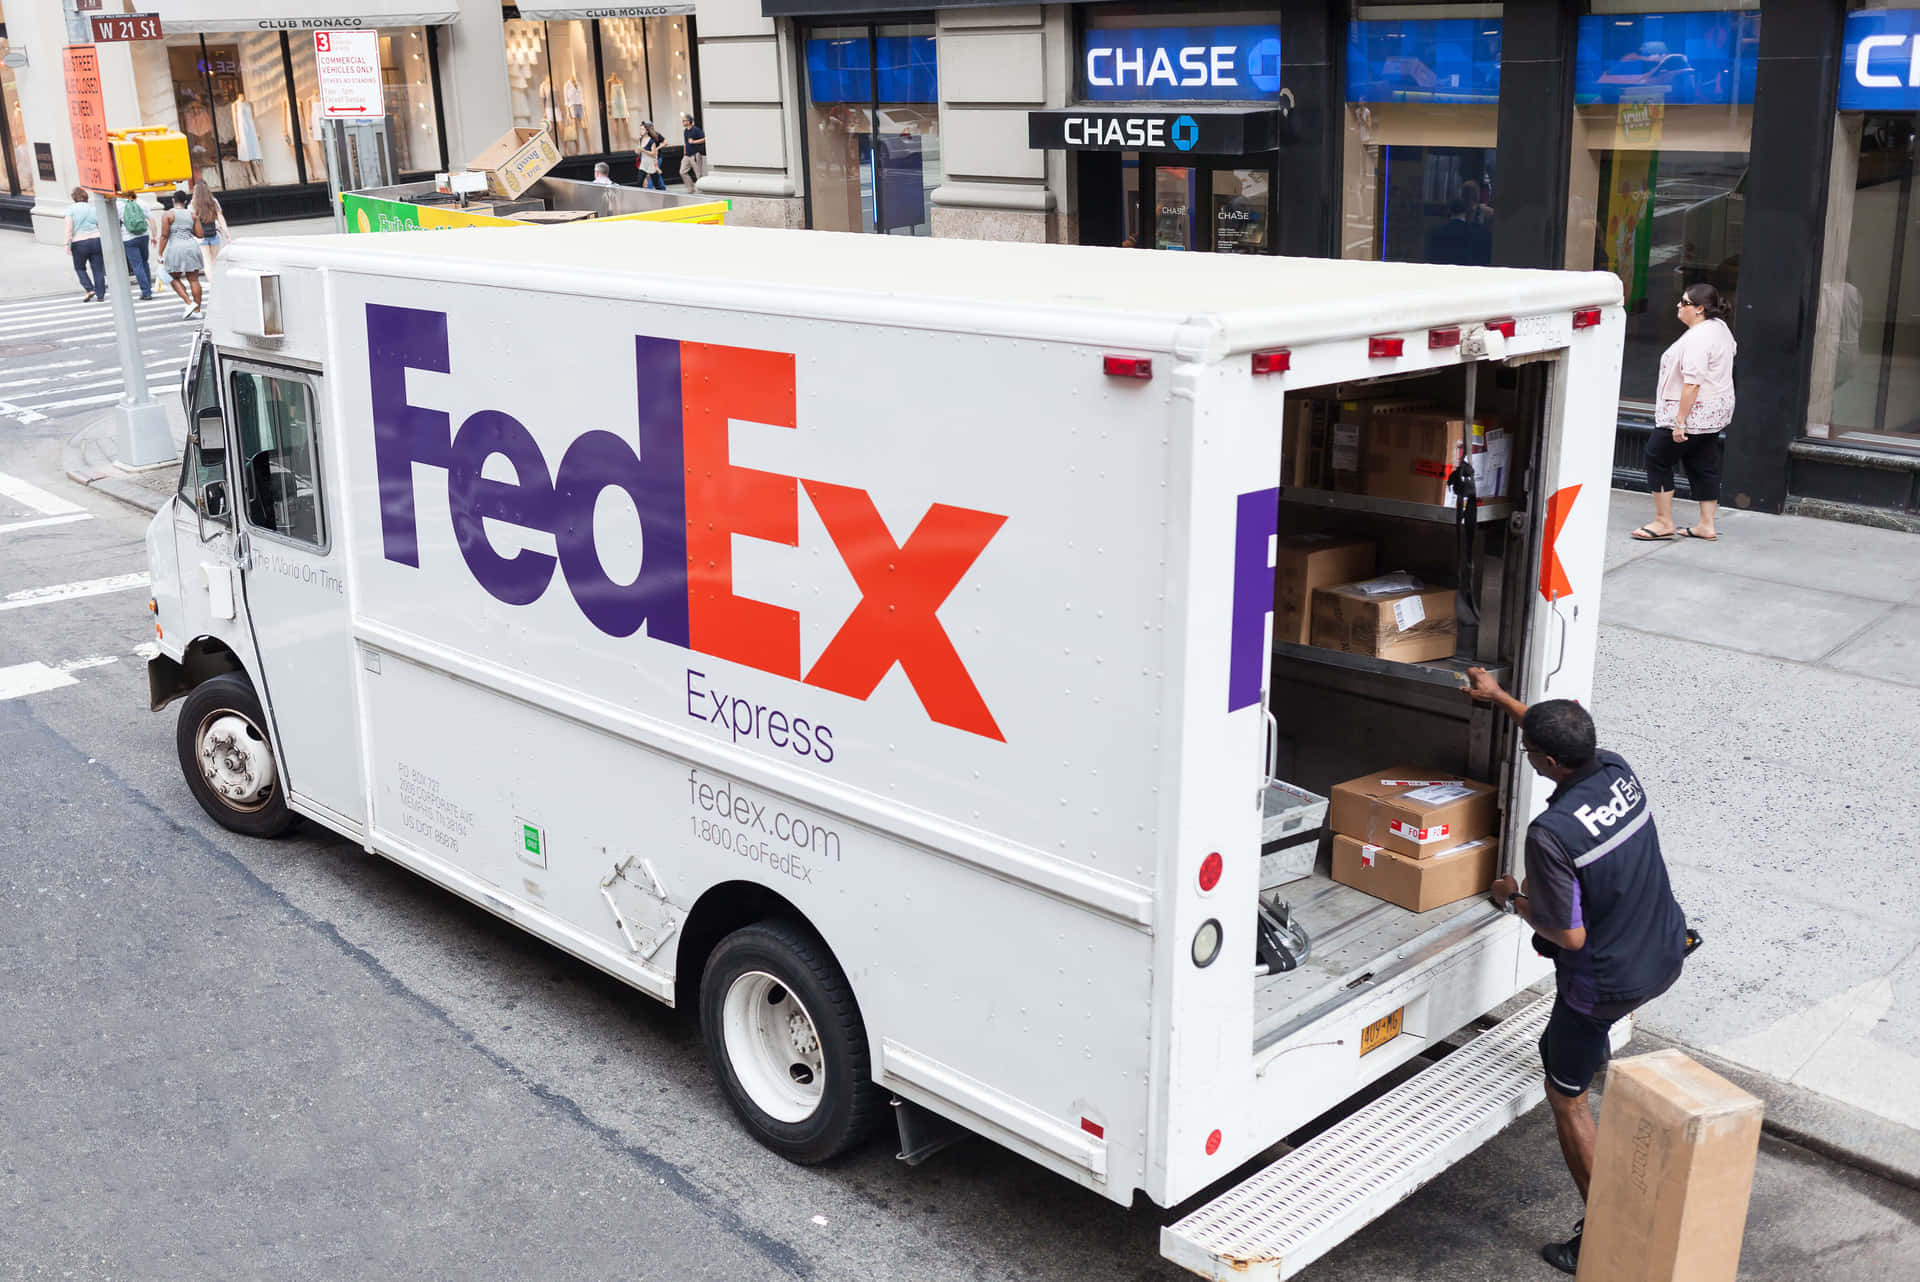 Zuverlässigeversandservices Mit Fedex